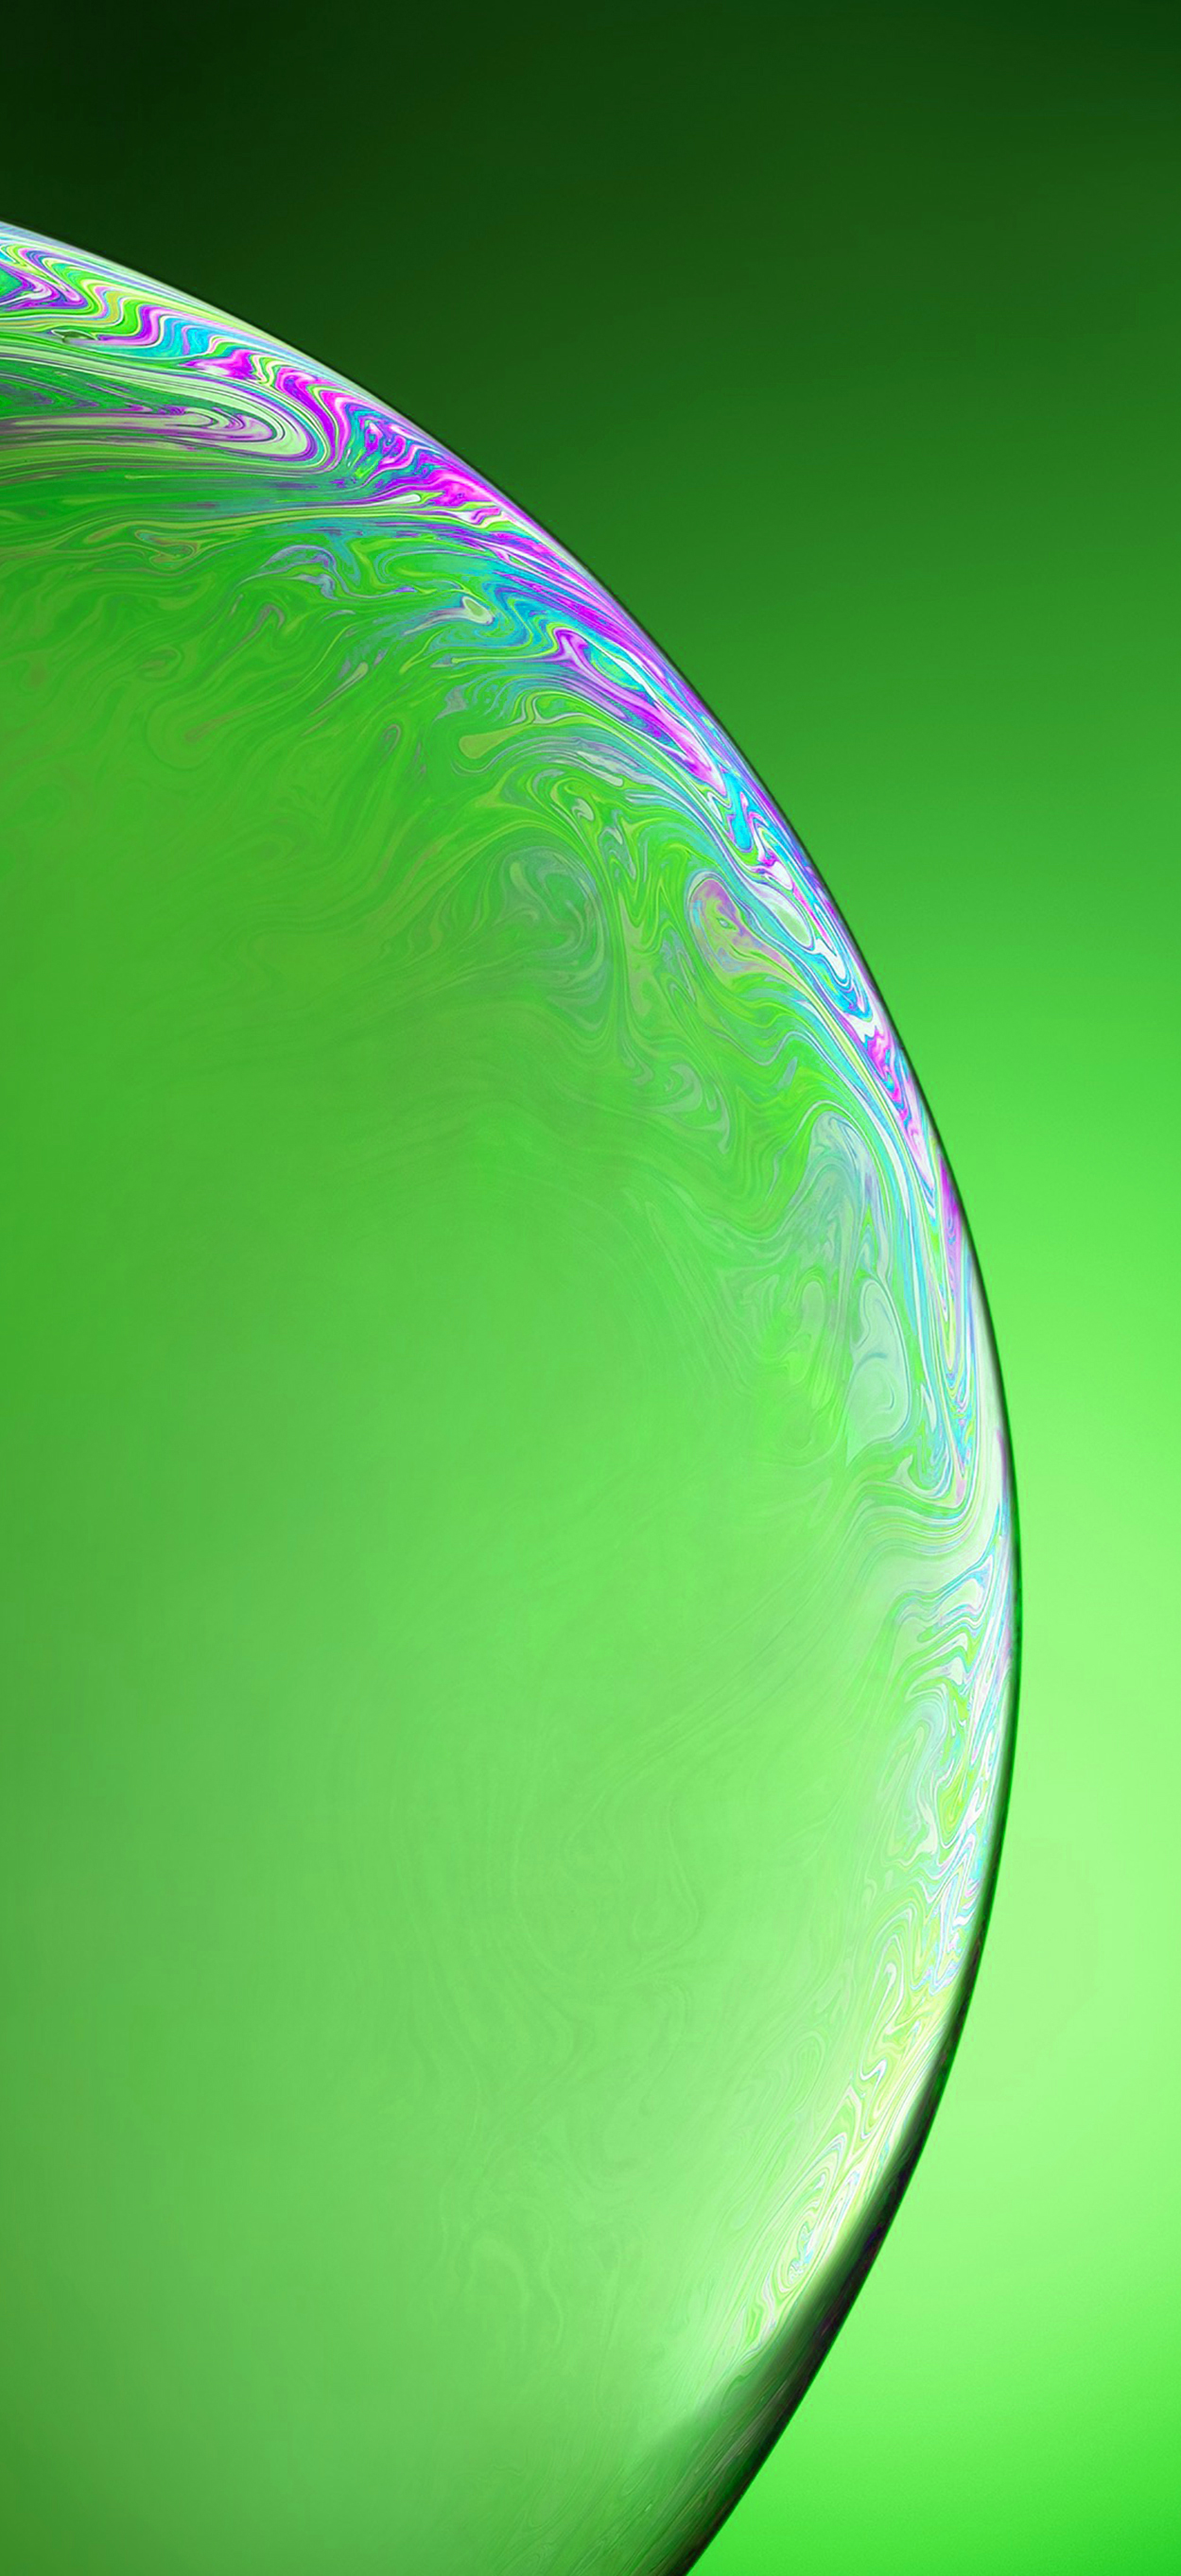 Iphone X Wallpaper Green